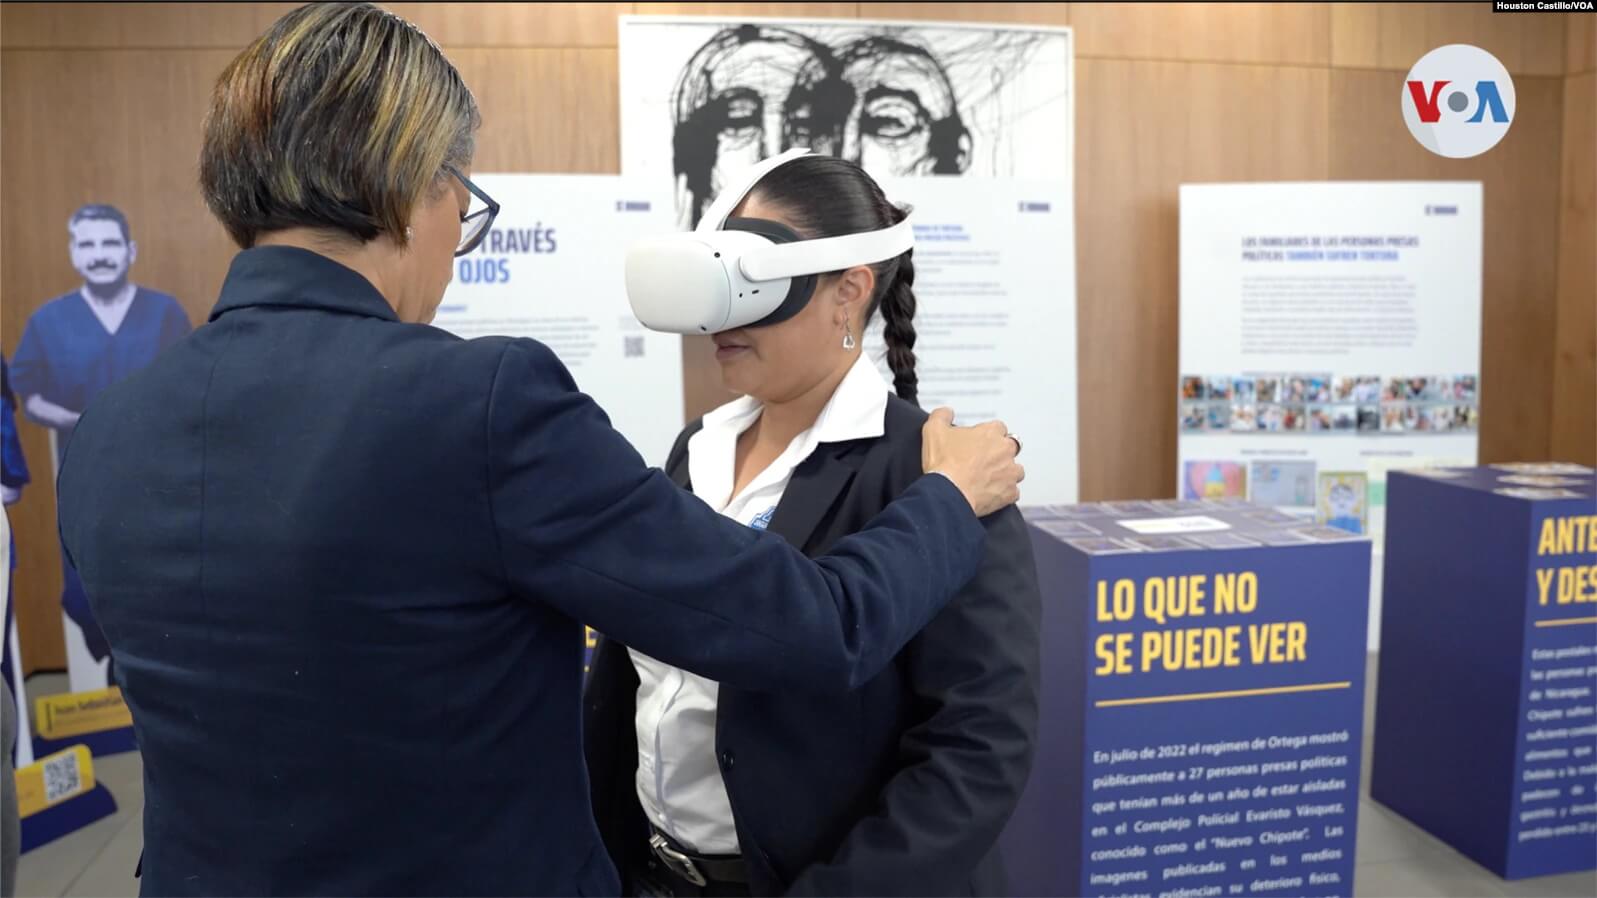 Exposición de Sé Humano, en la Asamblea Legislativa de Costa Rica. Foto Houston Castillo, VOA